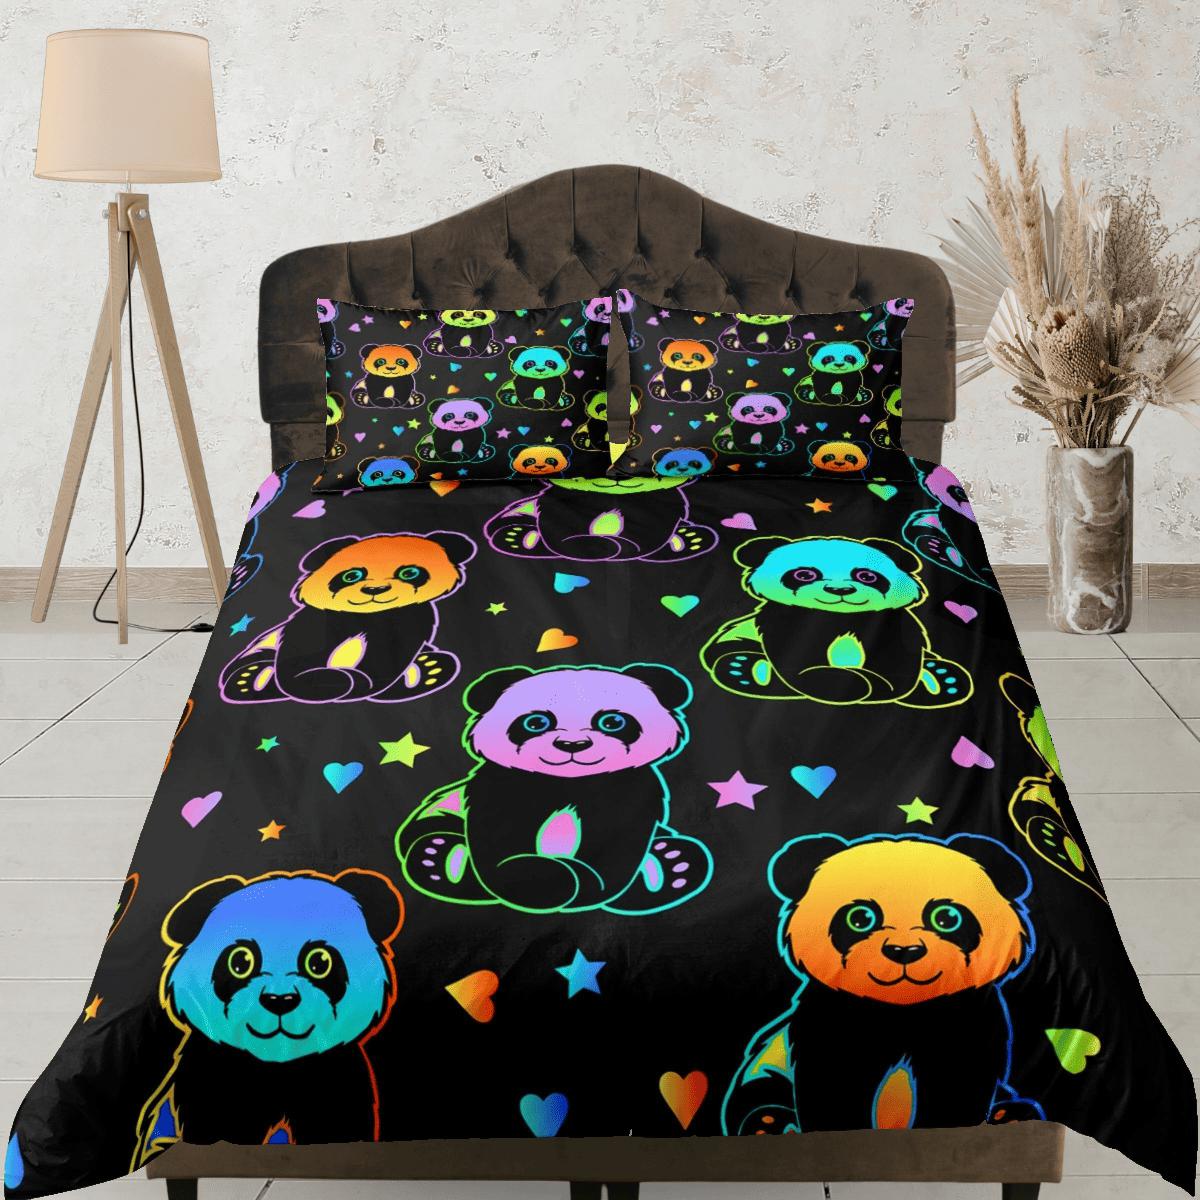 daintyduvet Colorful neon panda duvet cover kids, bedding set full, king, queen, dorm bedding, toddler bedding, aesthetic bedspread, panda lovers gift